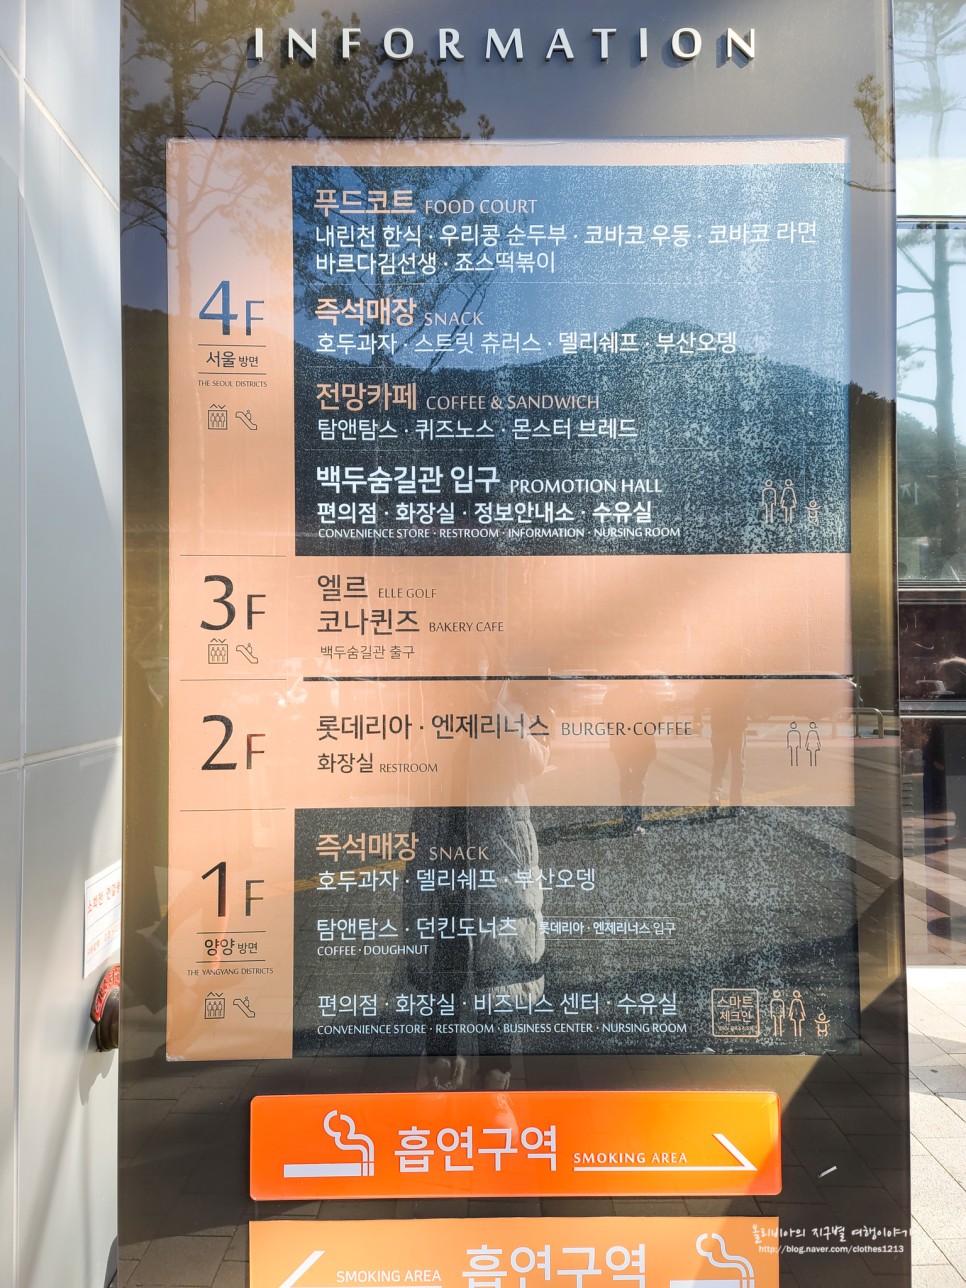 서울양양고속도로 내린천 휴게소 맛집은?